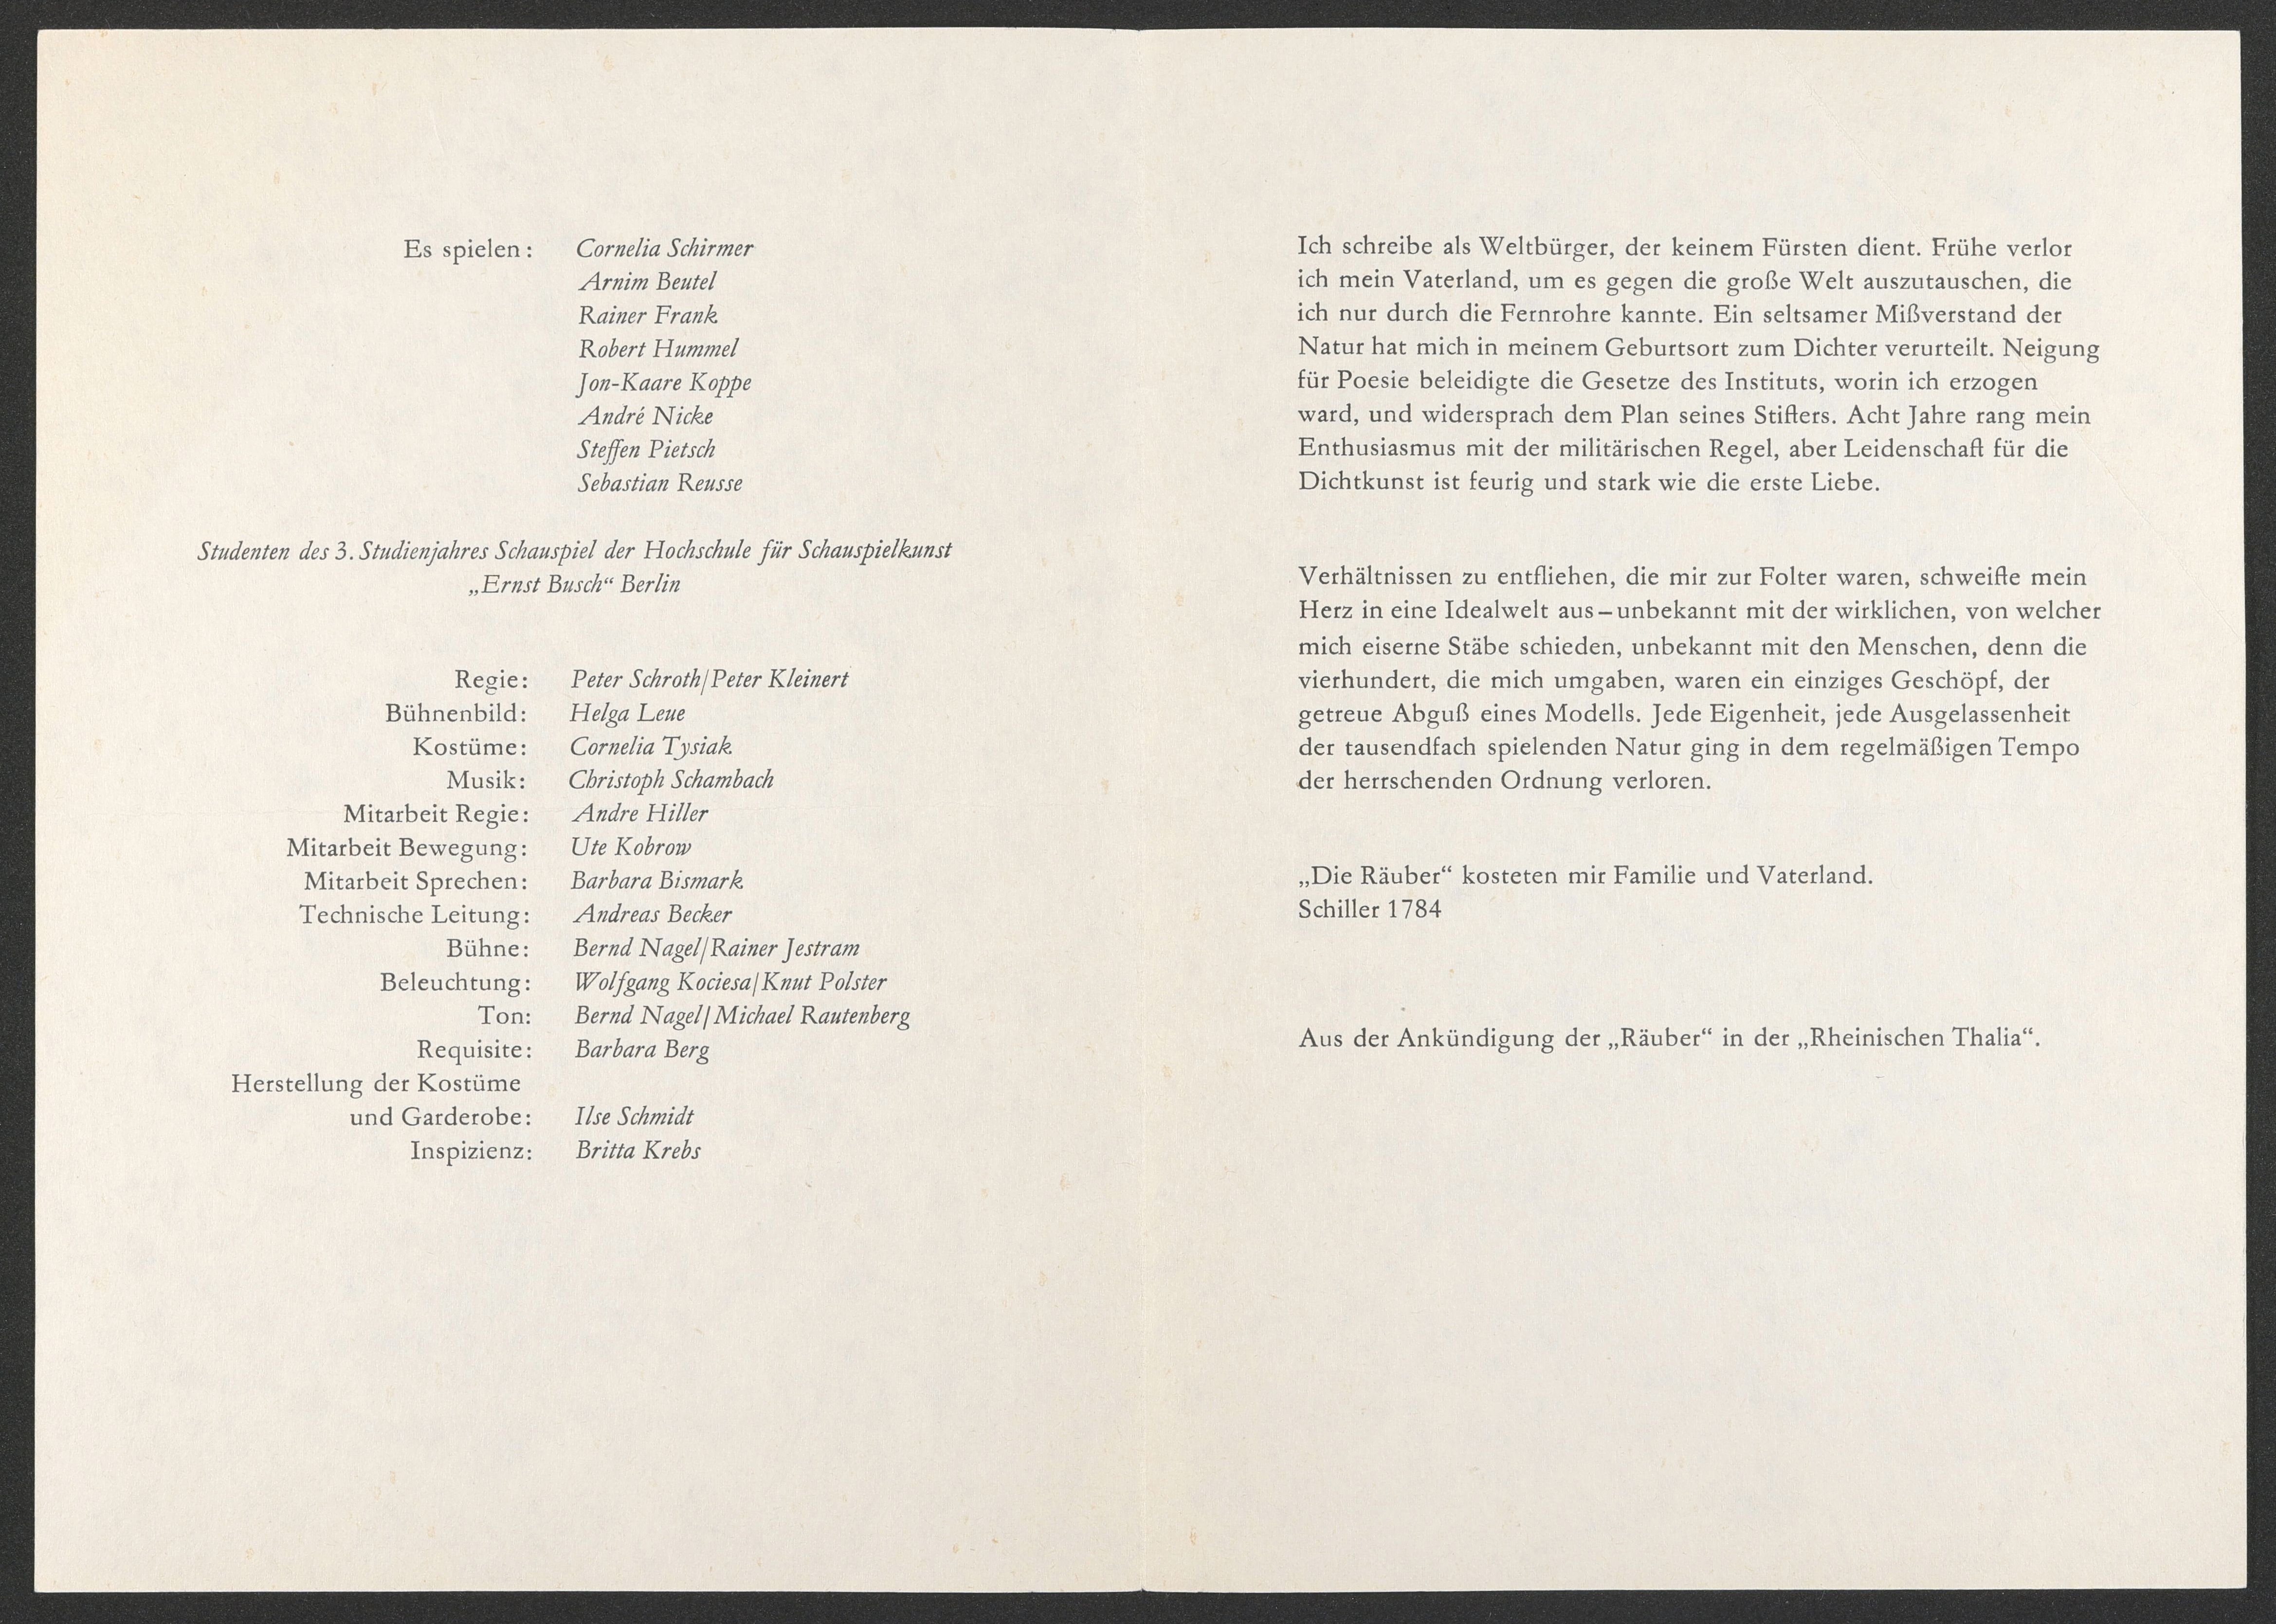 Programmheft zu "Die Räuber – Friedrichs schweißige Träume" am bat-Studiotheater 1990 (Hochschule für Schauspielkunst Ernst Busch Berlin RR-F)